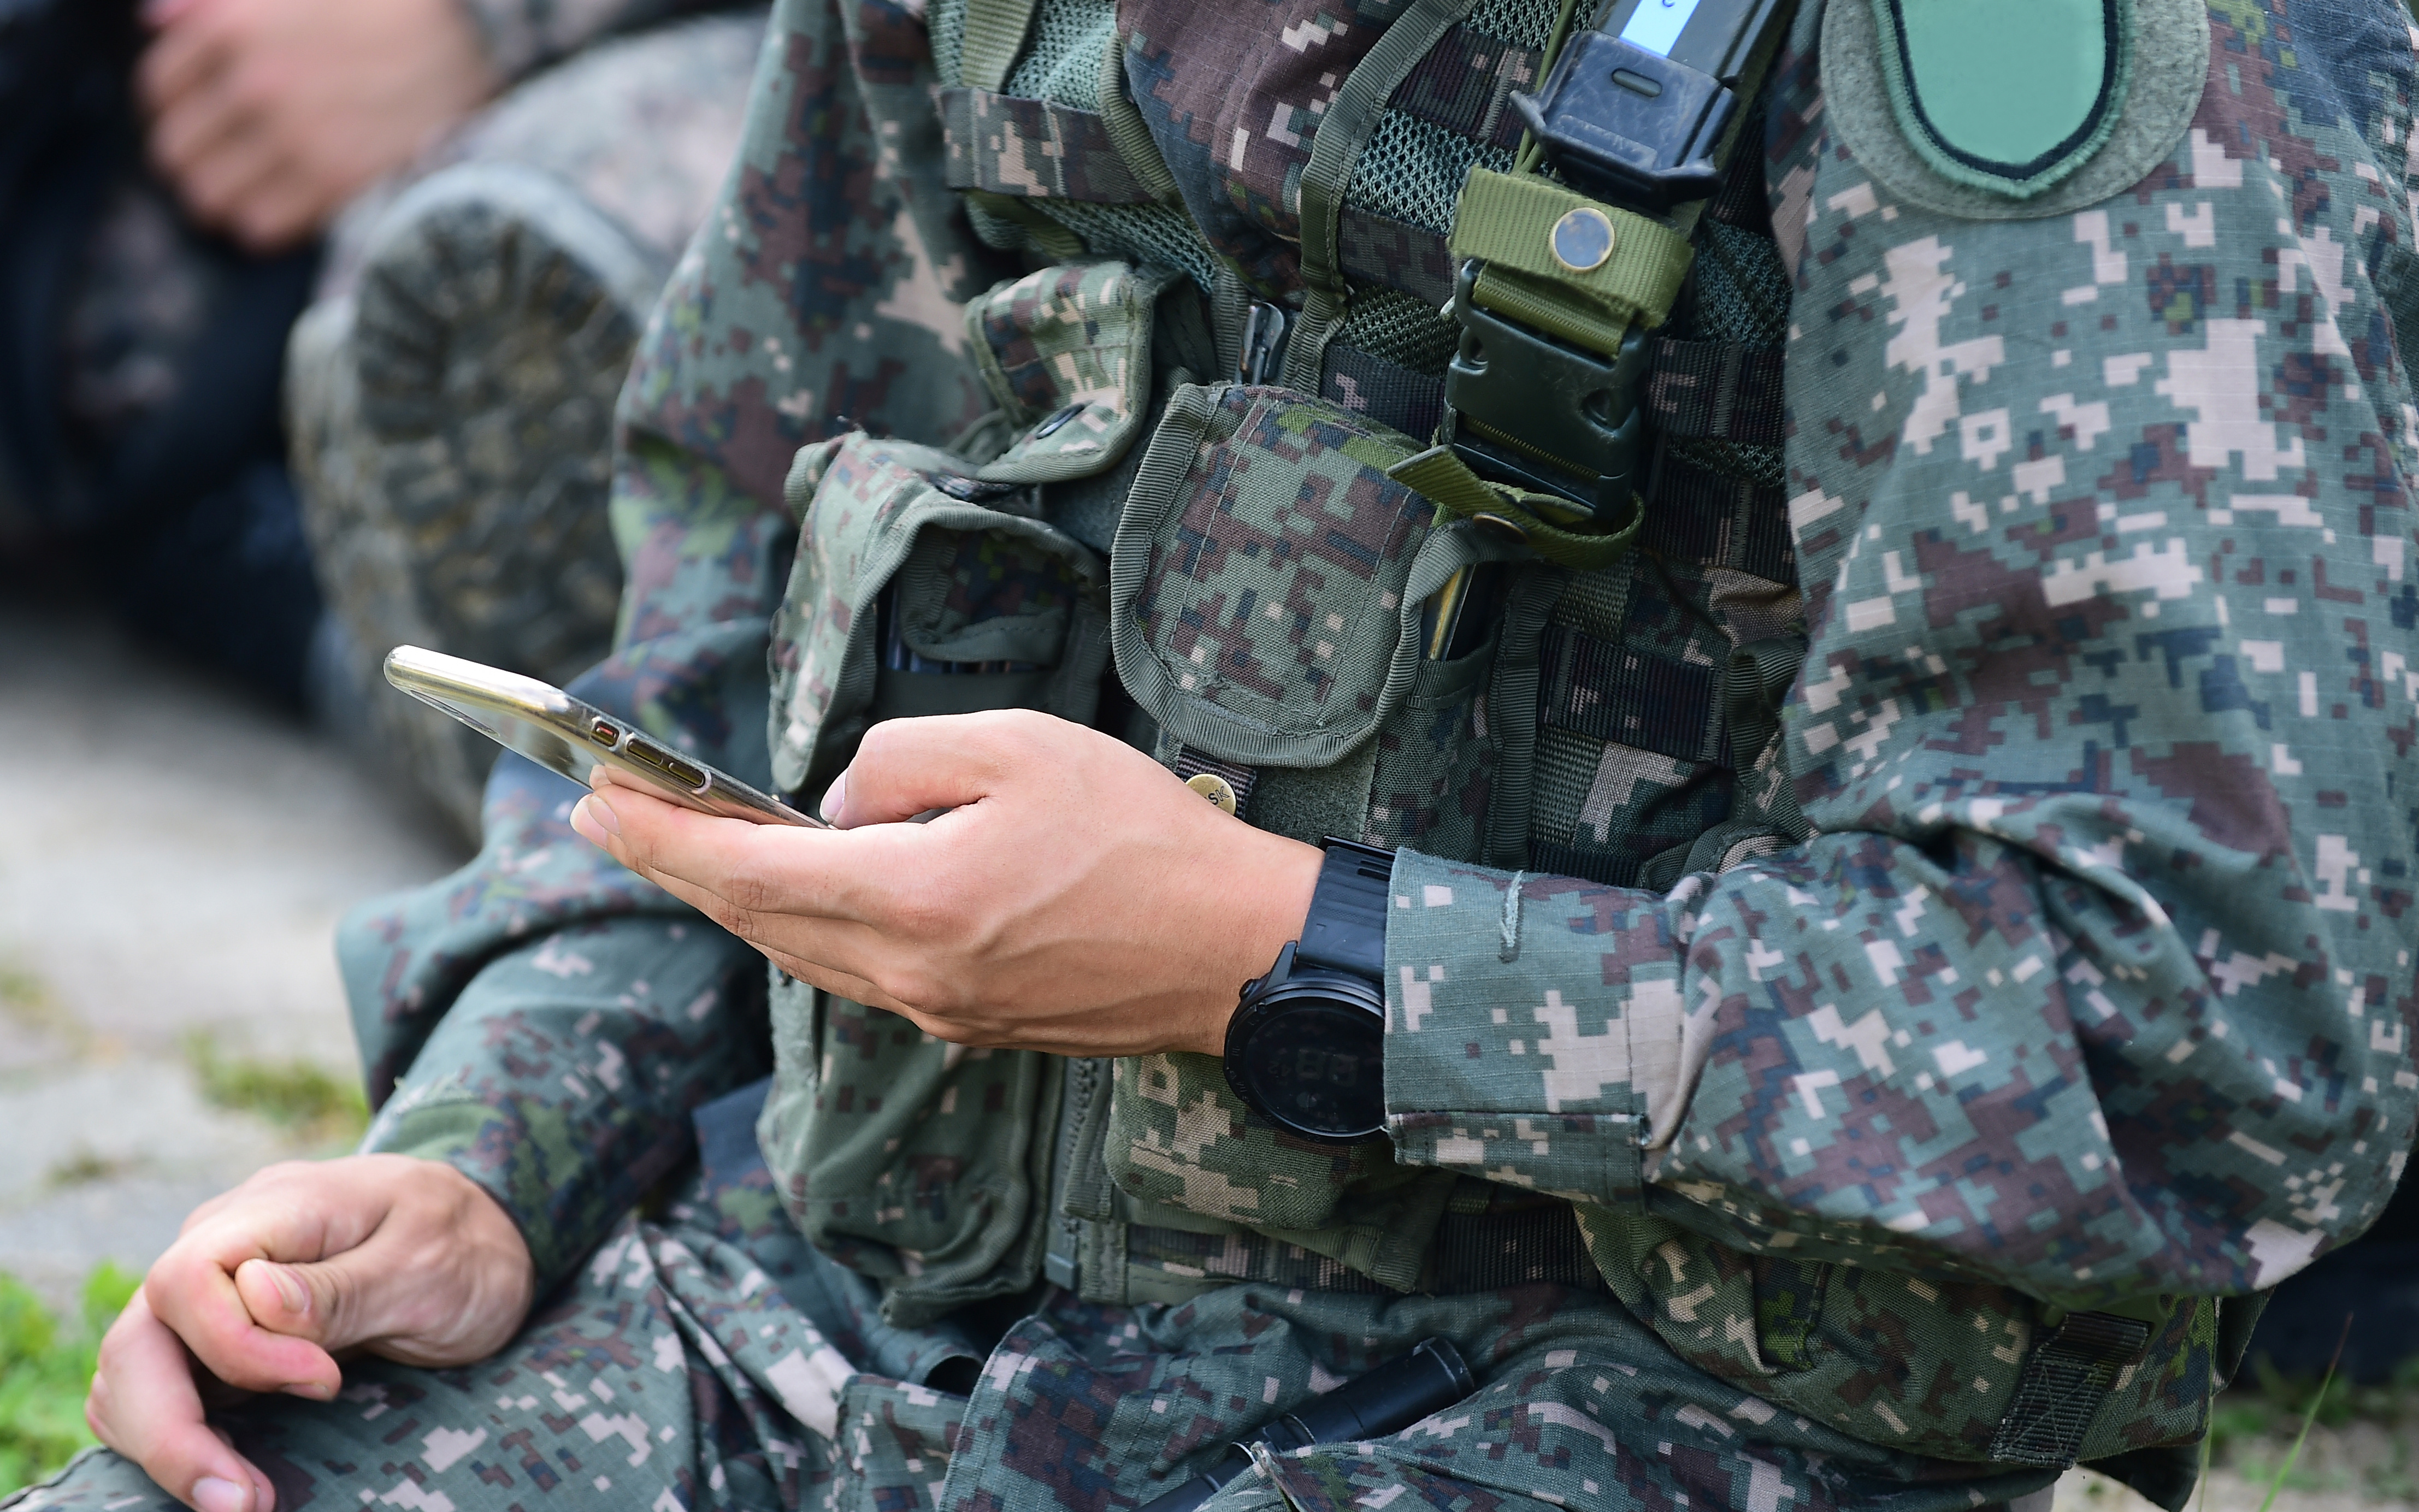 Южнокорейский солдат продавал поддельные билеты на концерты, чтобы заработать на покупку криптовалюты